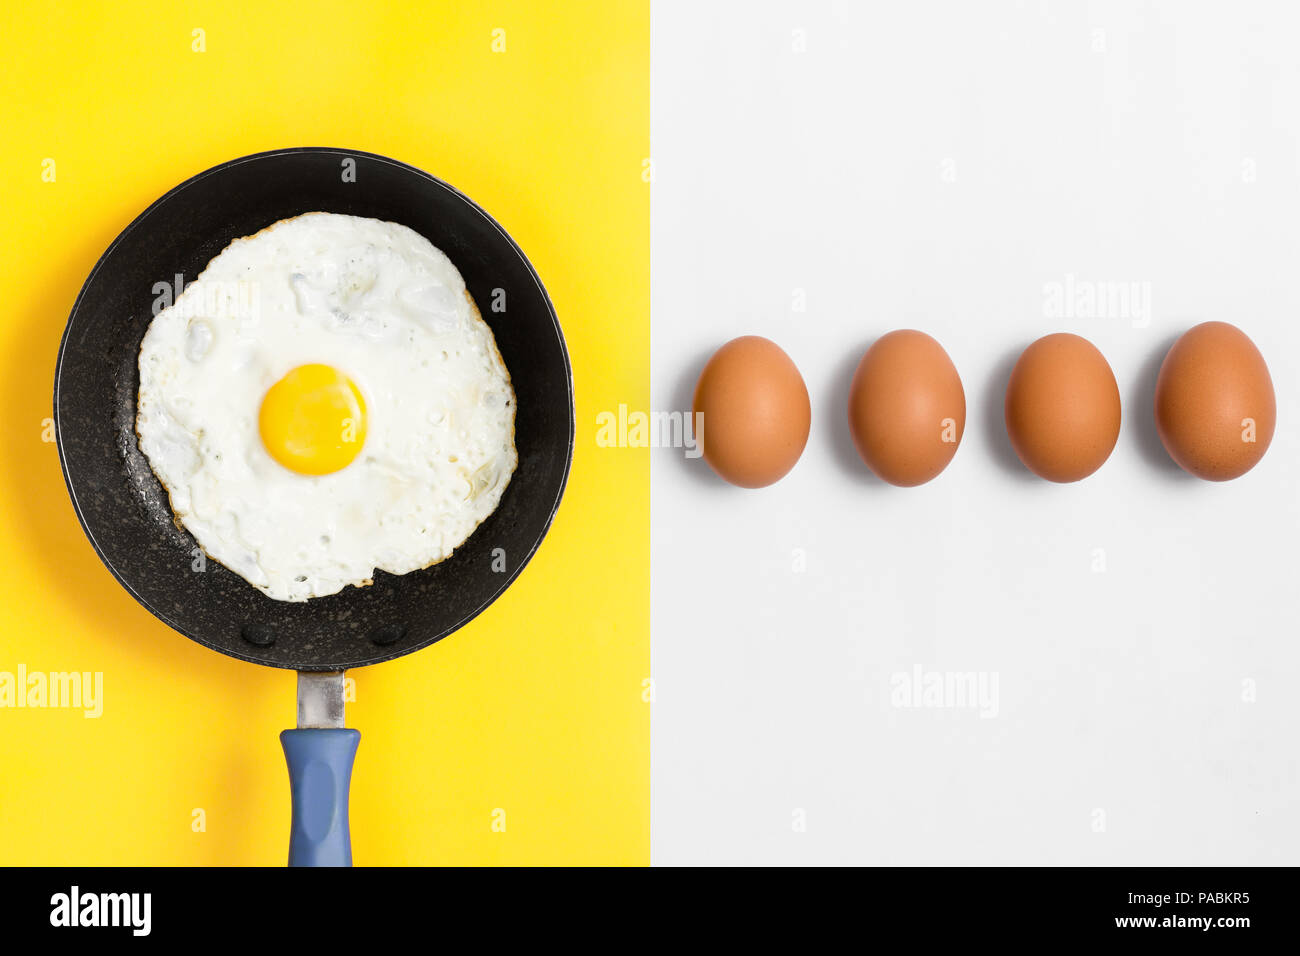 Split color plano imagen laicos con huevo cocido en una sartén los huevos crudos y alineadas. Foto de stock